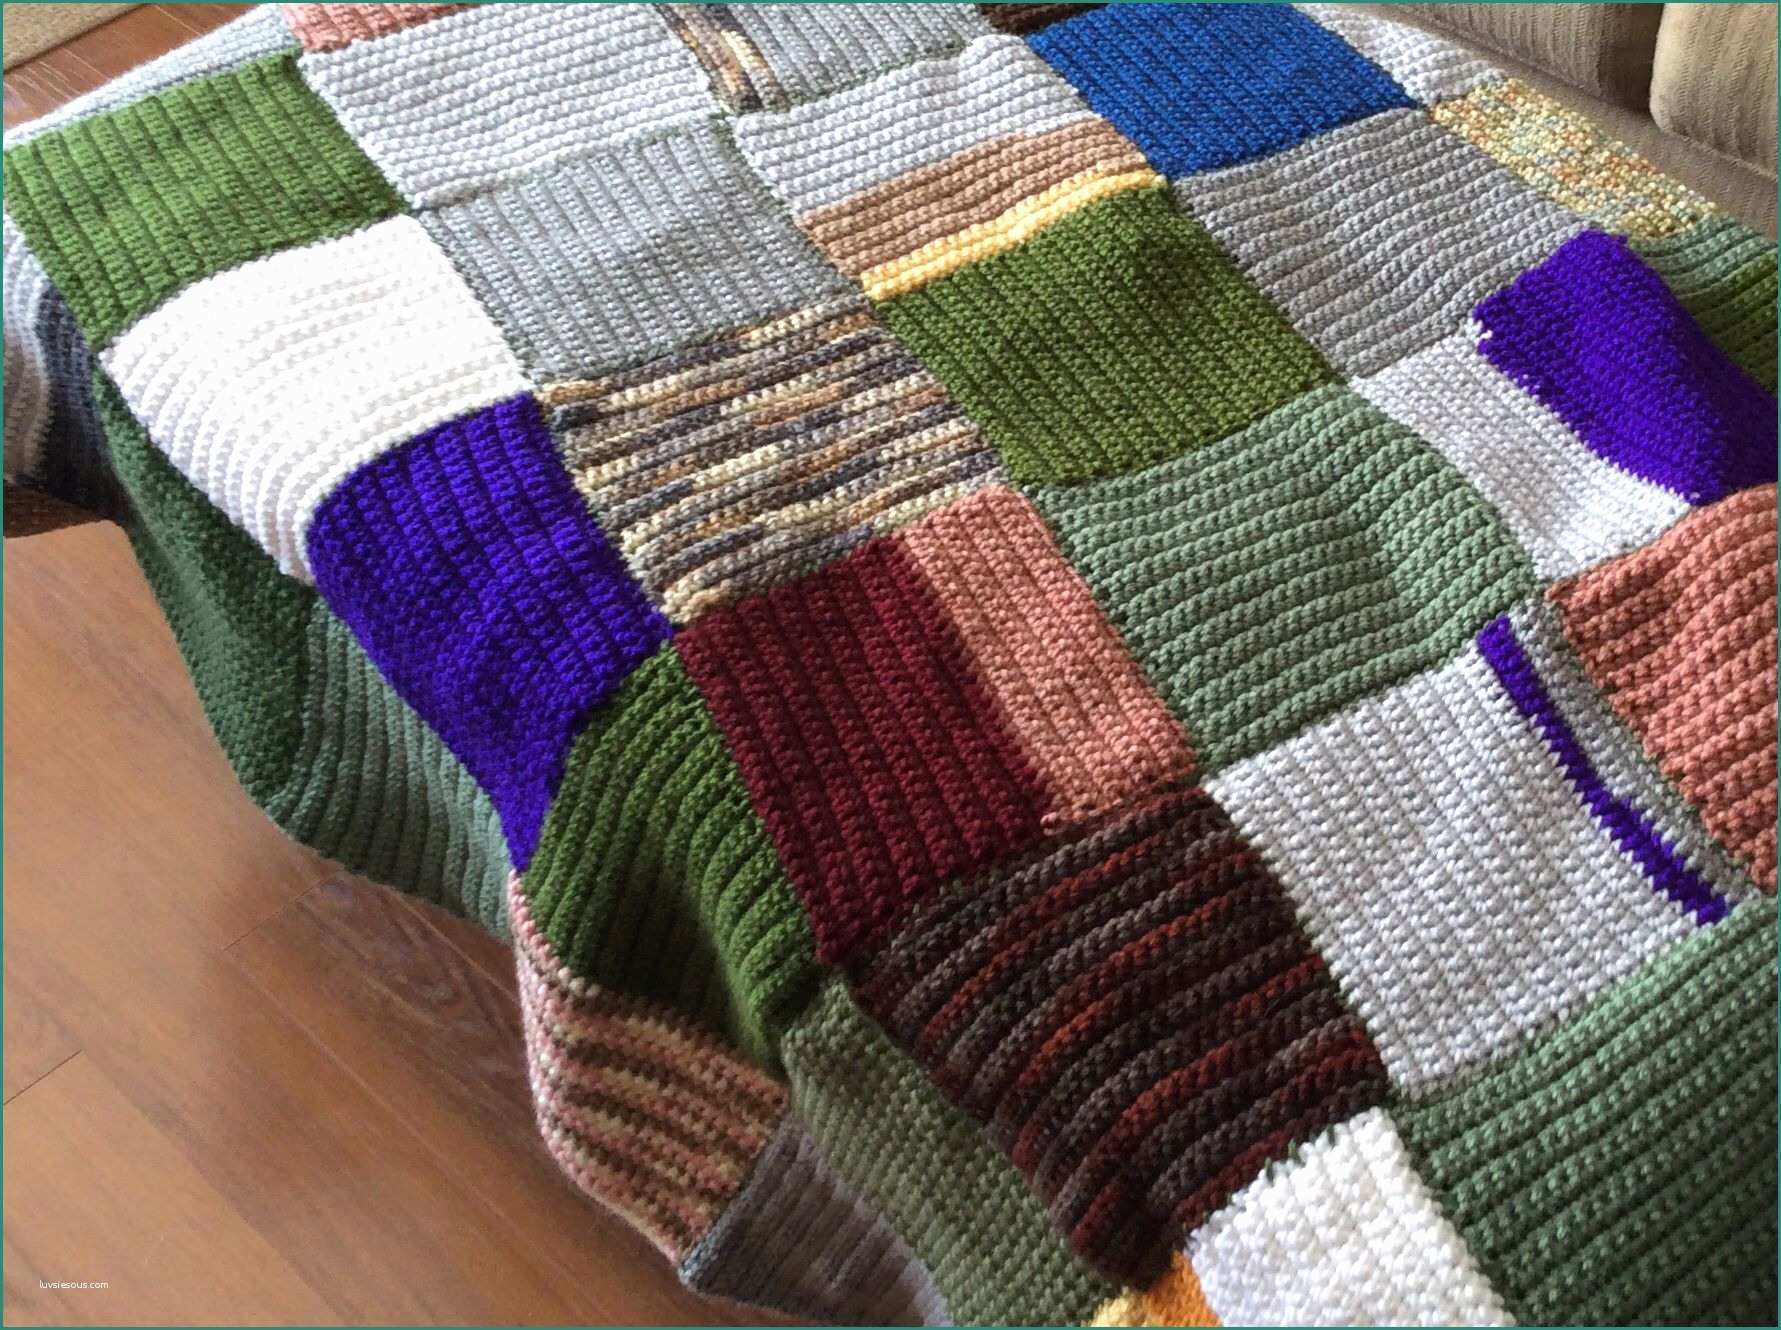 Lo Spazio Di Lilla Copertine Neonato E Single Crochet Squares In Alternating Direction Using Leftover Wool